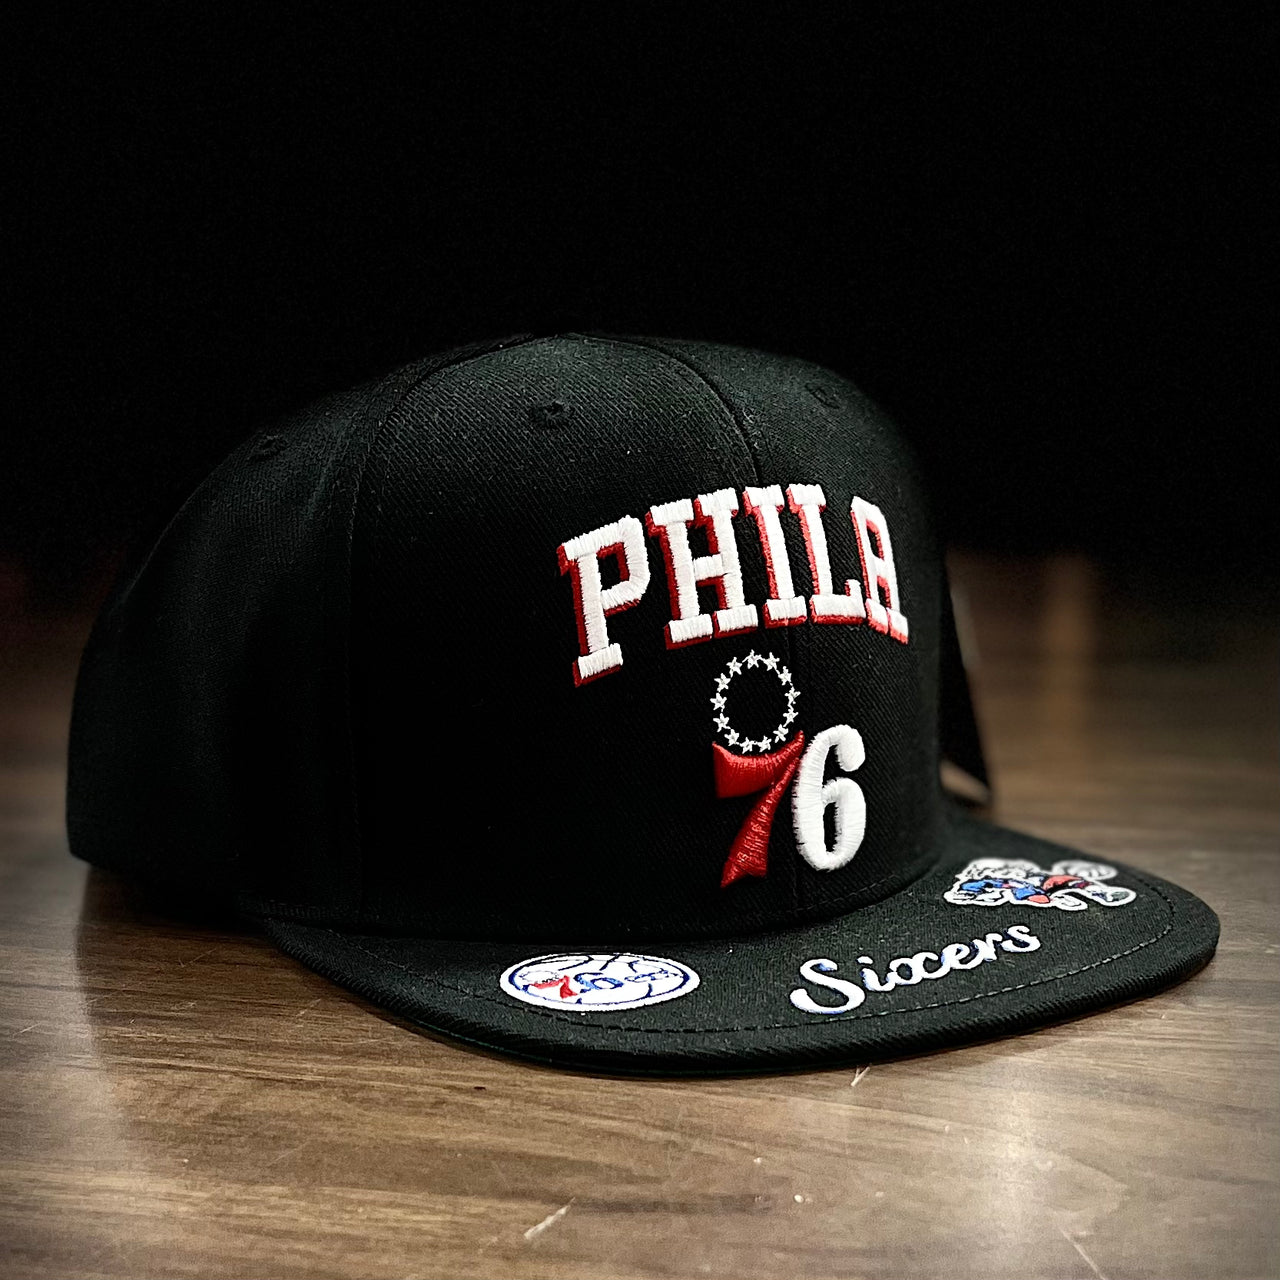 Philadelphia Phillies Cooperstown Core Flex Hat - Burgundy